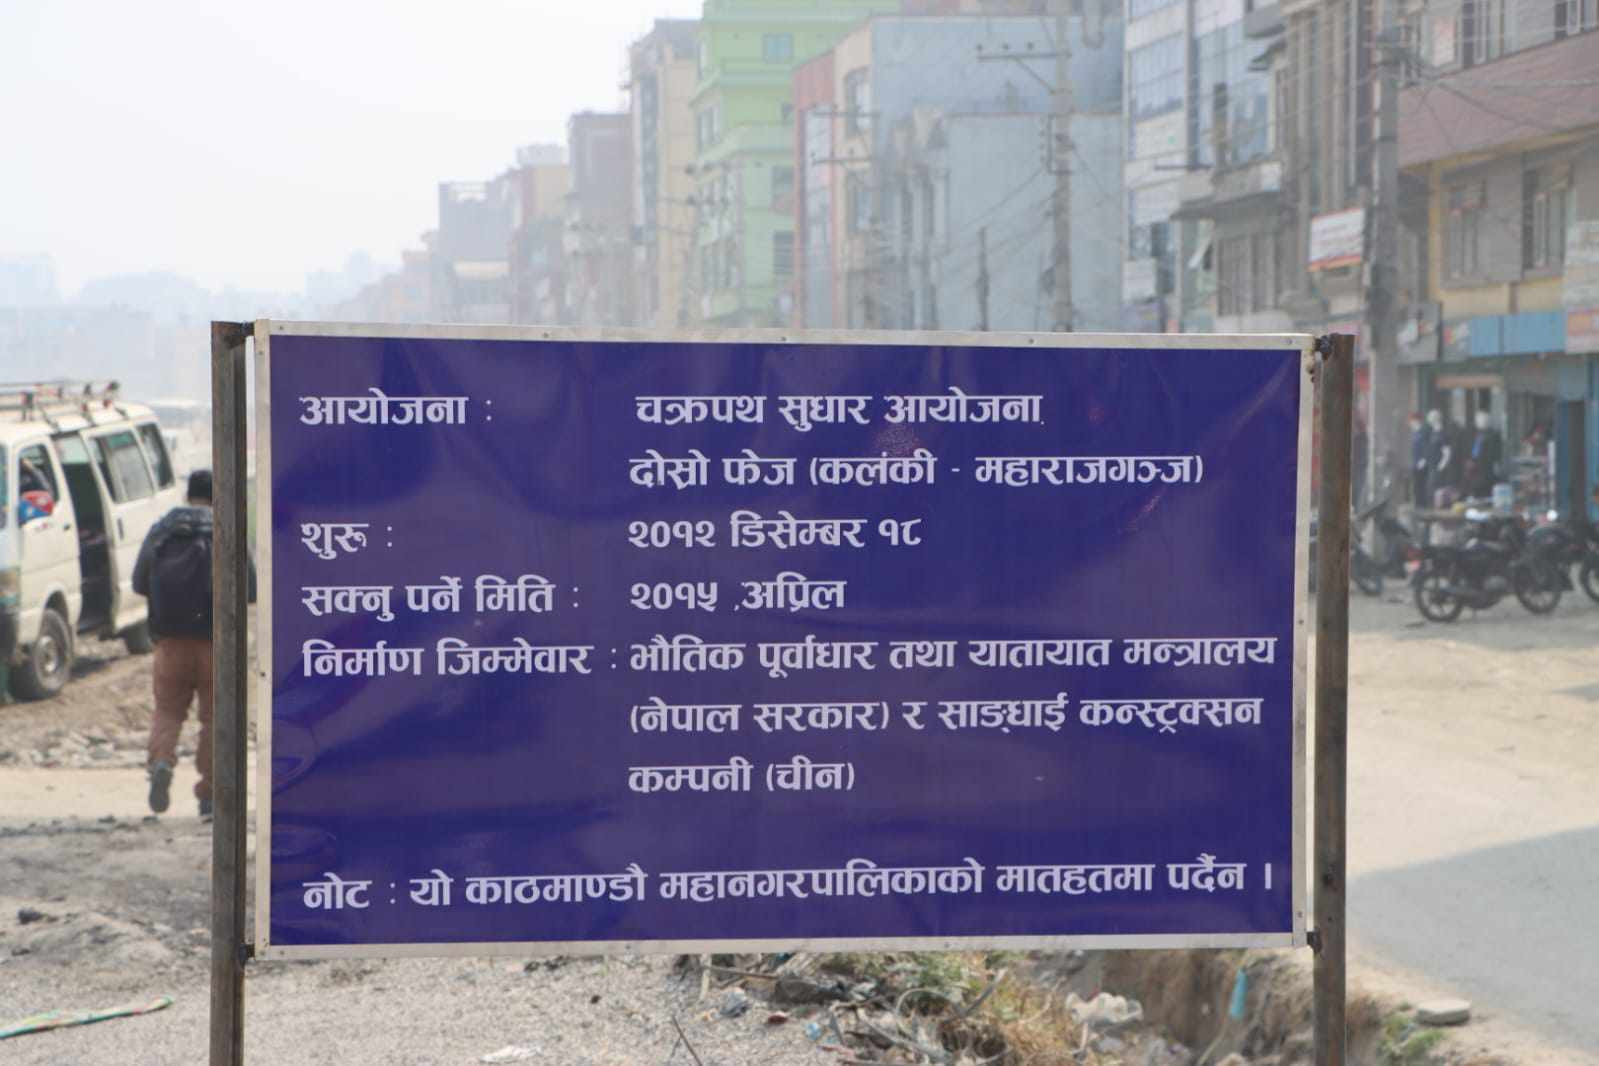 चक्रपथ क्षेत्रमा काठमाडौं महानगरले राखेका नौ बोर्ड चोरी भए, बालेनलाई बोधार्थ लेखेर प्रहरीमा उजुरी